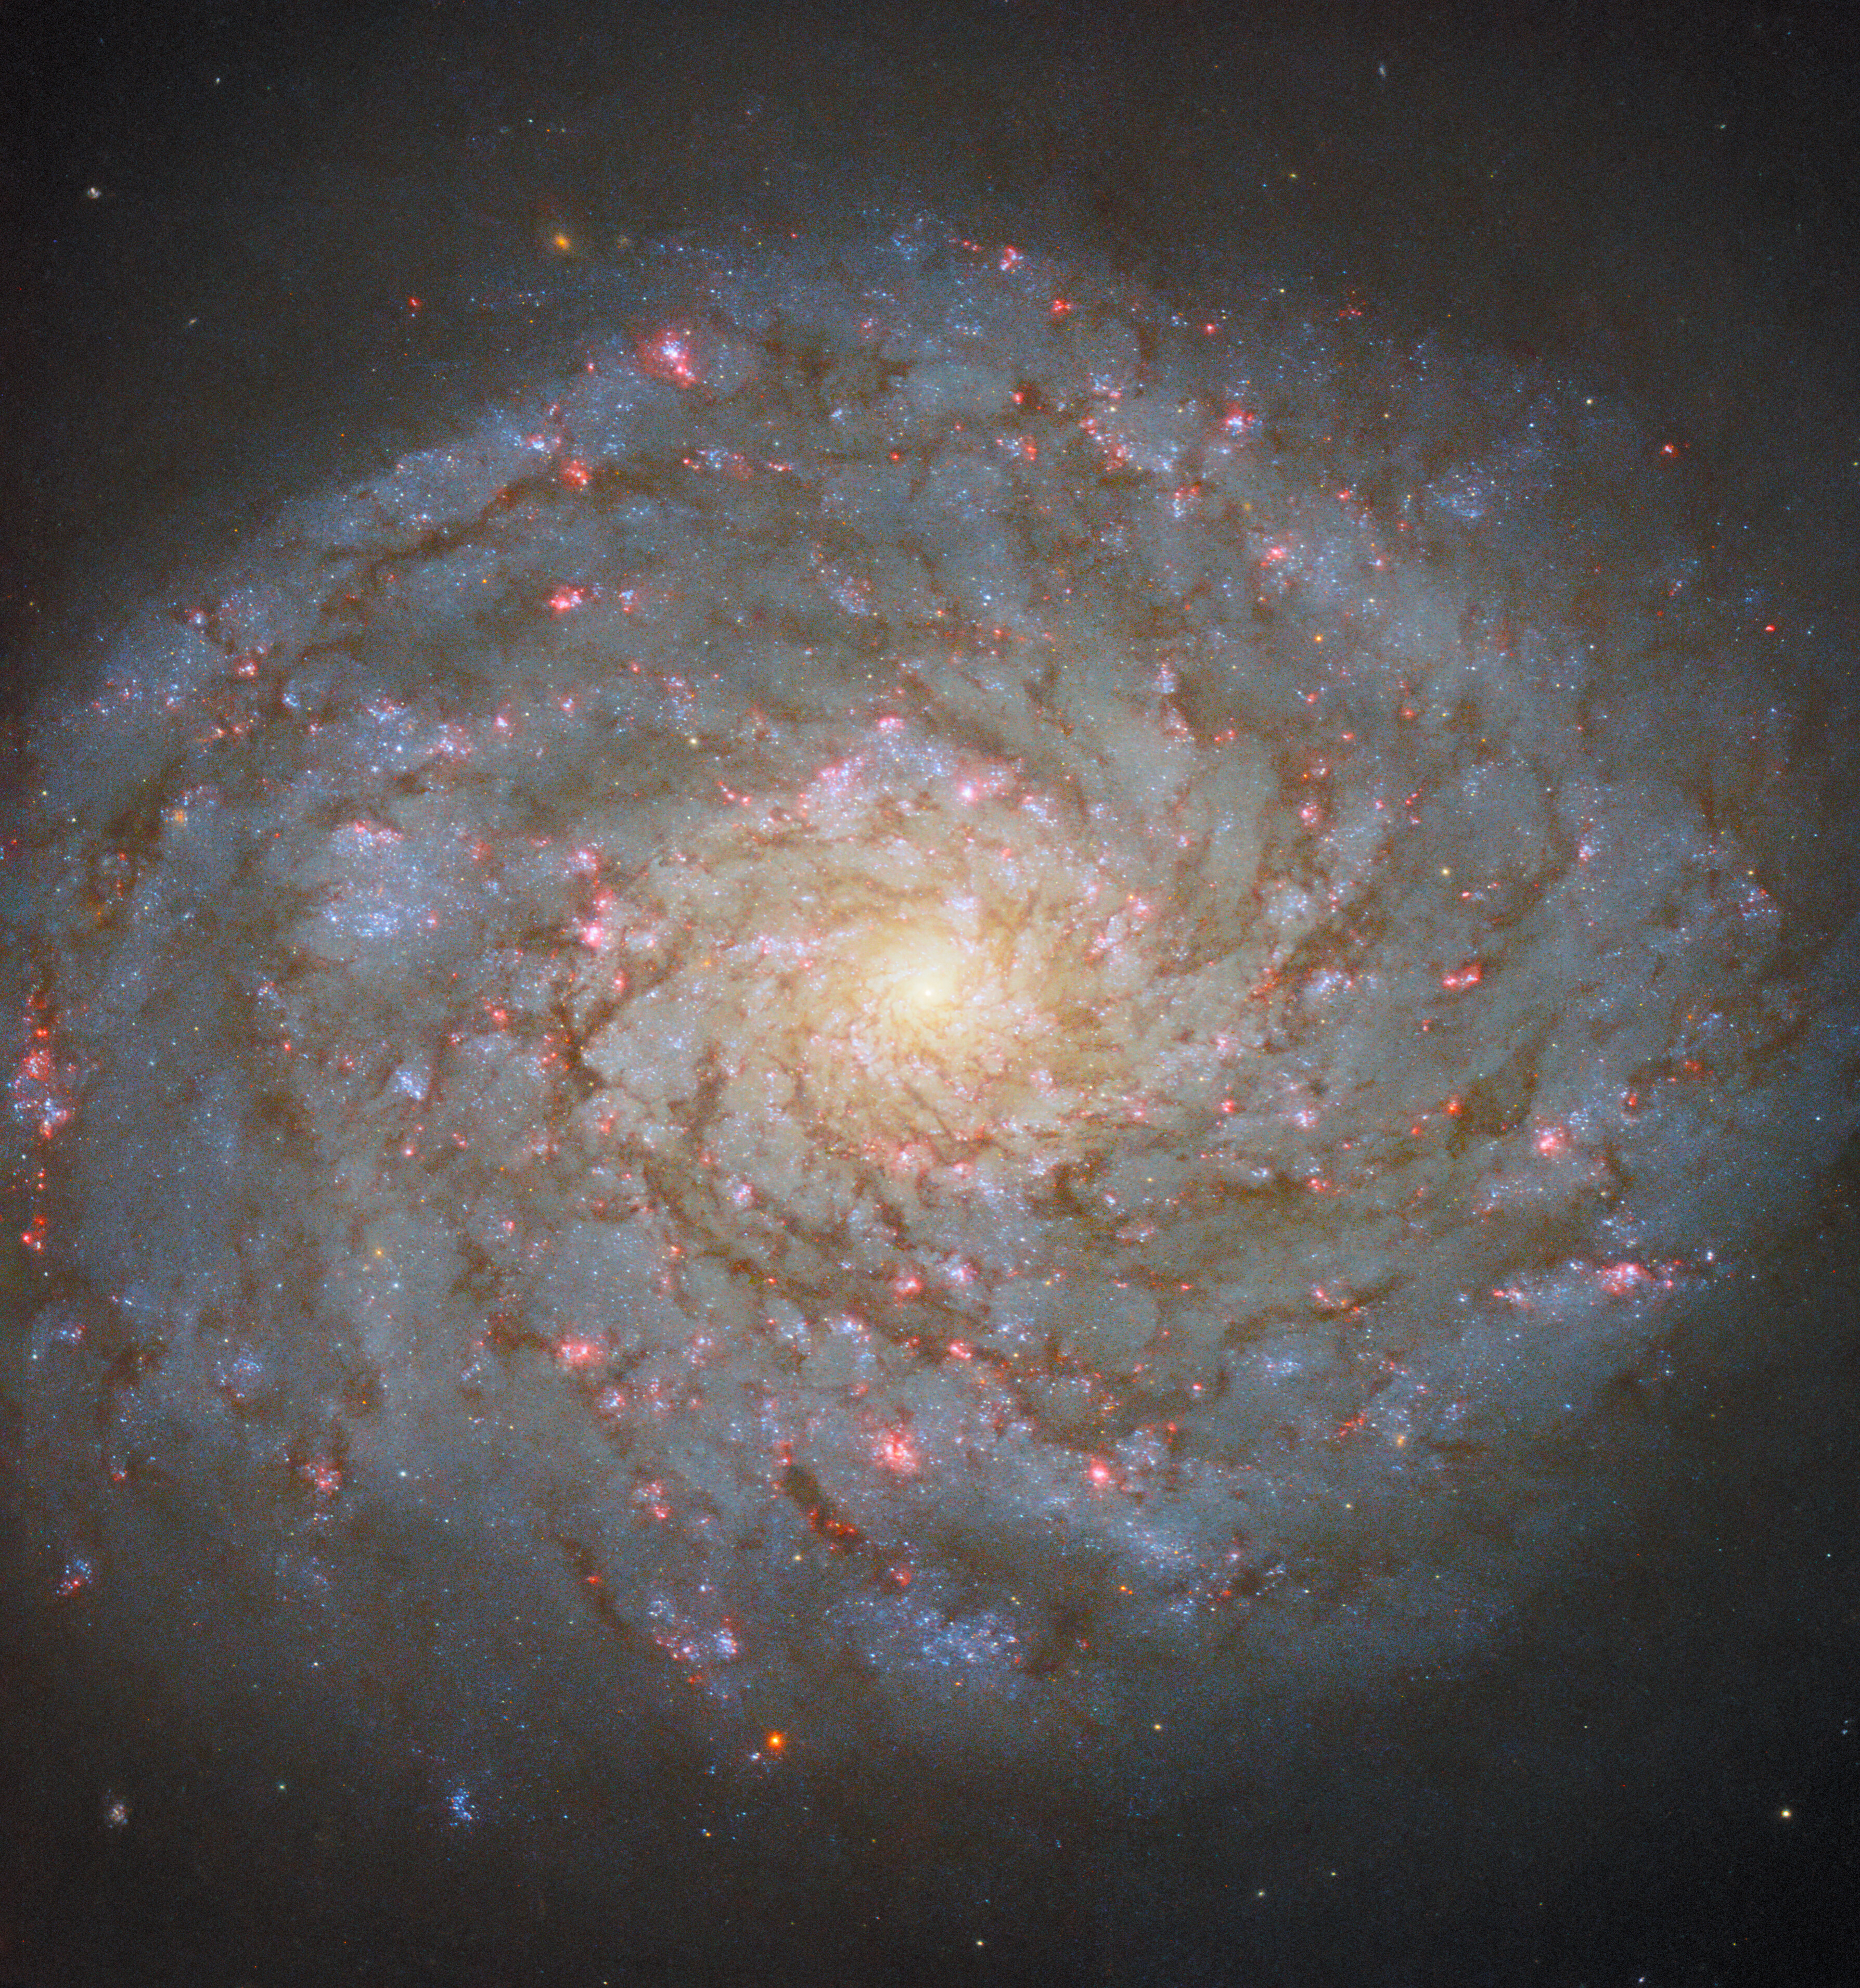 螺旋星系的特写镜头占据了大部分场景。它的核心有一个明亮的发光点，宽阔的旋臂上有许多深色的尘埃线，圆盘上有粉红色的发光点标志着恒星形成的区域。一个微弱的光晕围绕着星系的圆盘，并渗入黑暗的背景中。